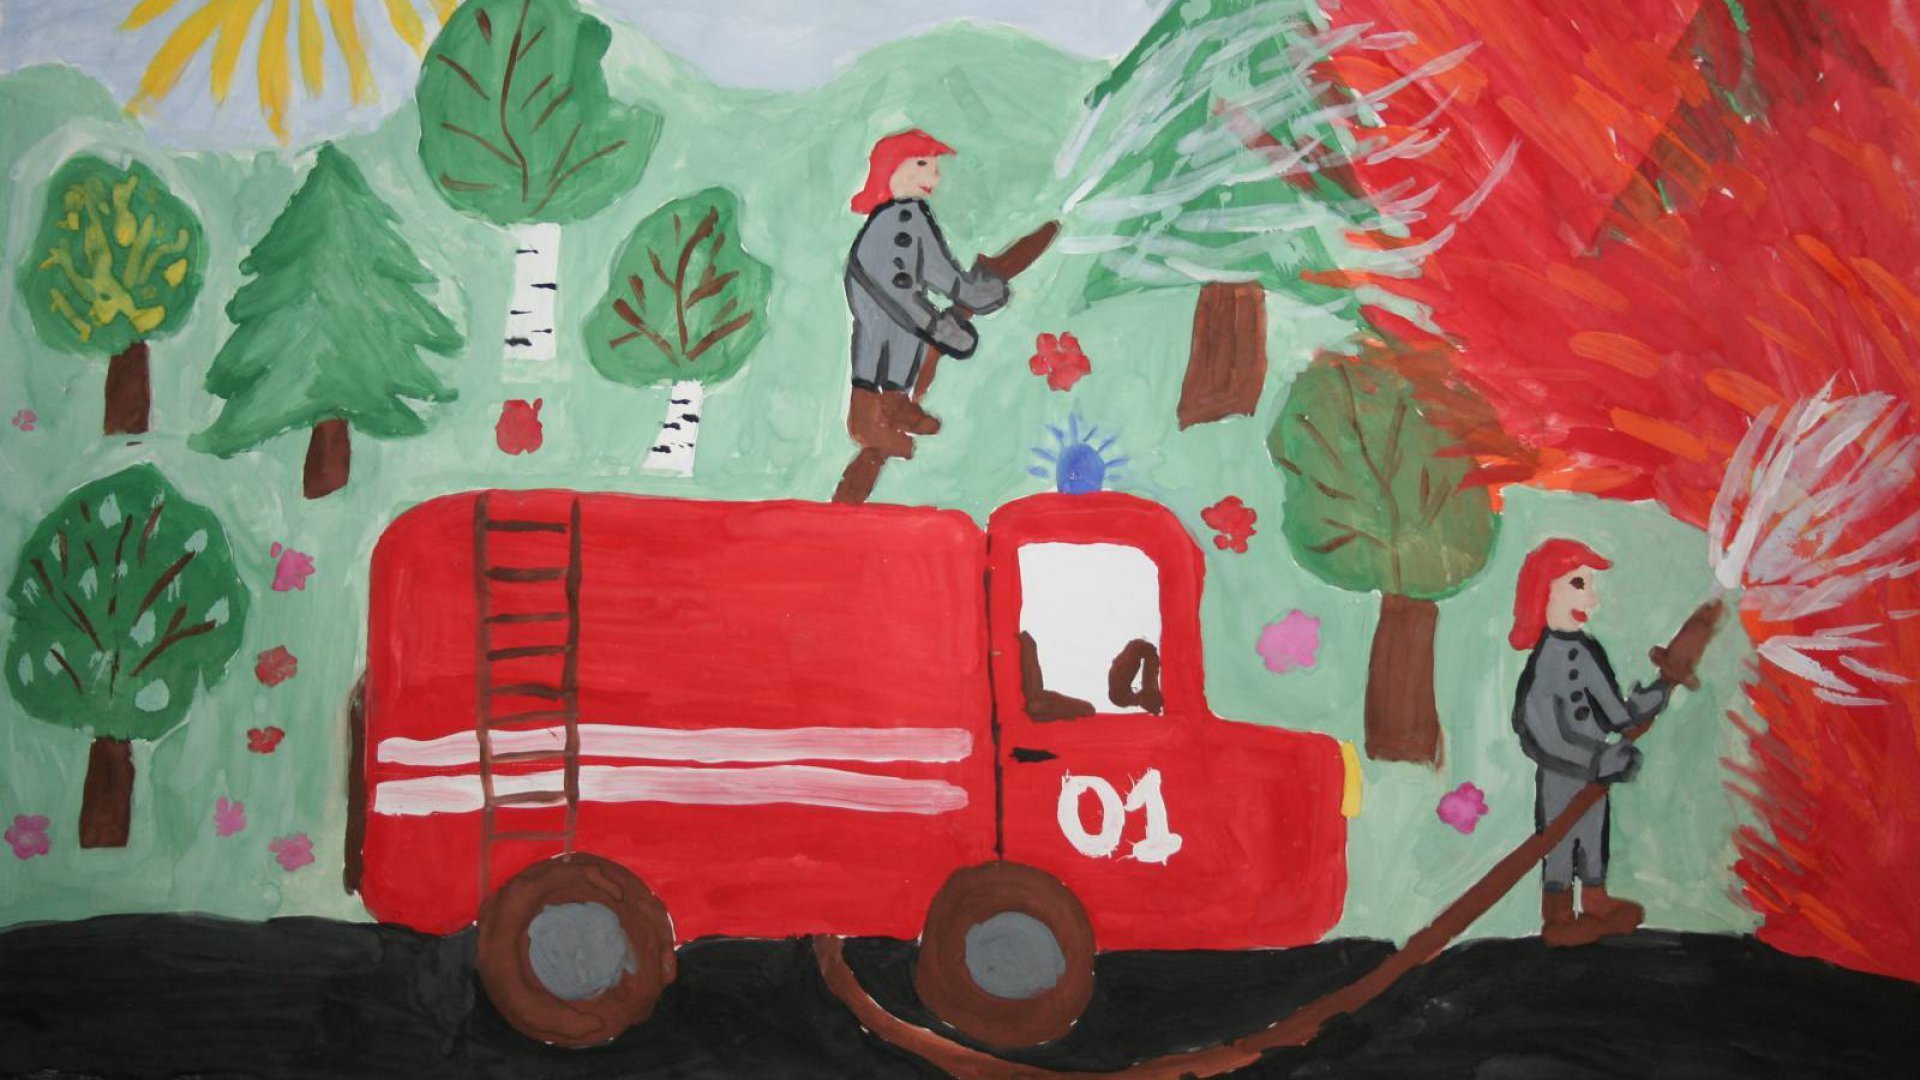 Детский Рисунок Про Пожарную Безопасность